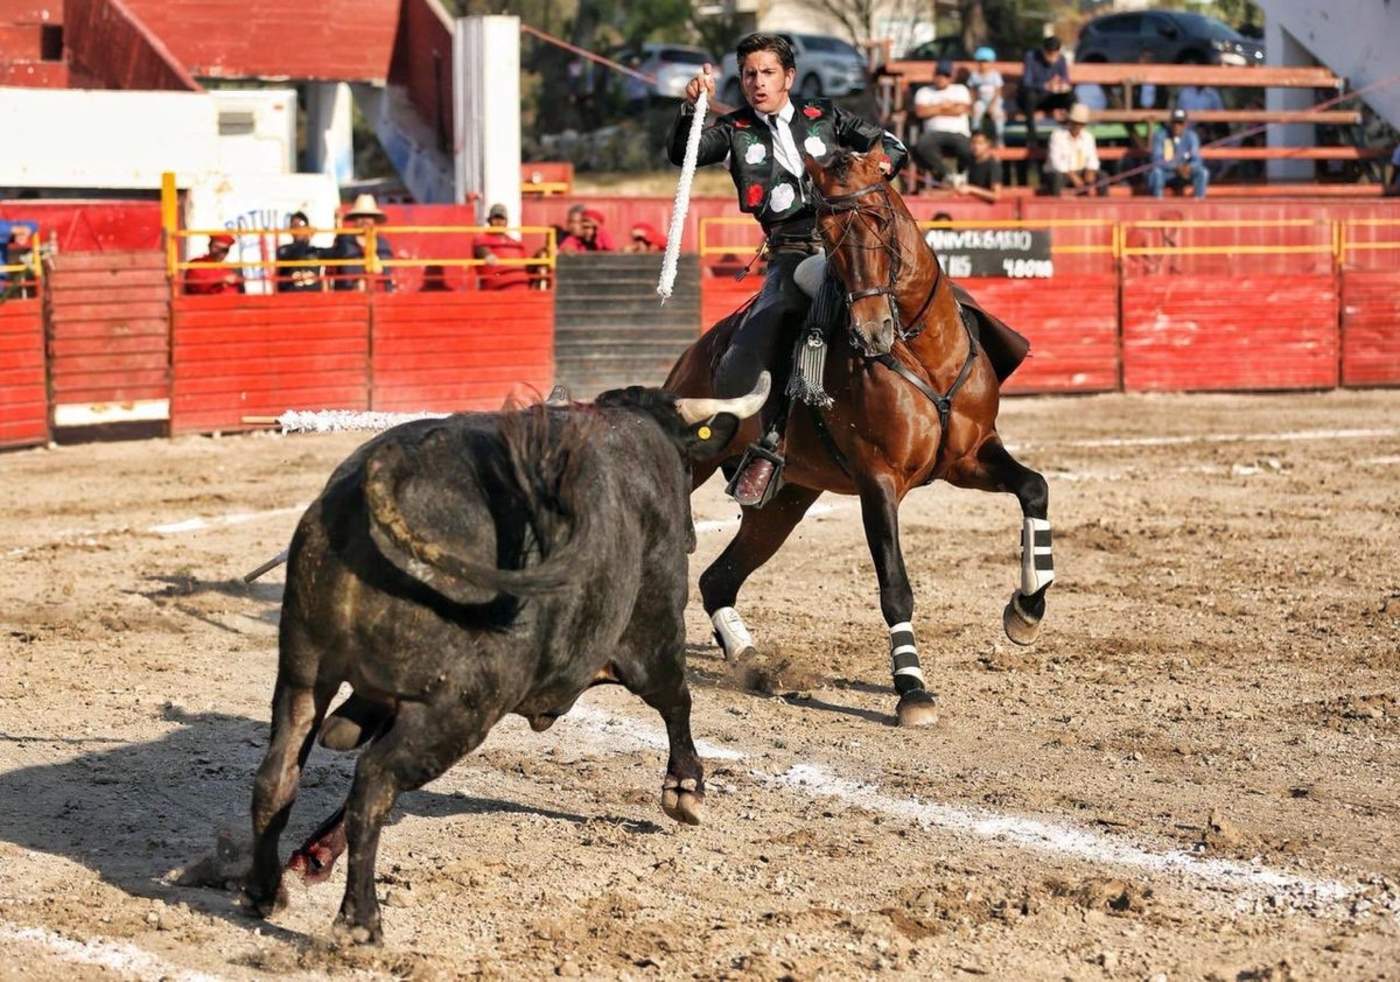 El rejoneador mexicano, Emiliano Gamero, partirá plaza esta tarde junto al matador capitalino Ernesto Javier “Calita”, ambos toreros viviendo excelentes momentos en sus respectivas carreras. (Especial)